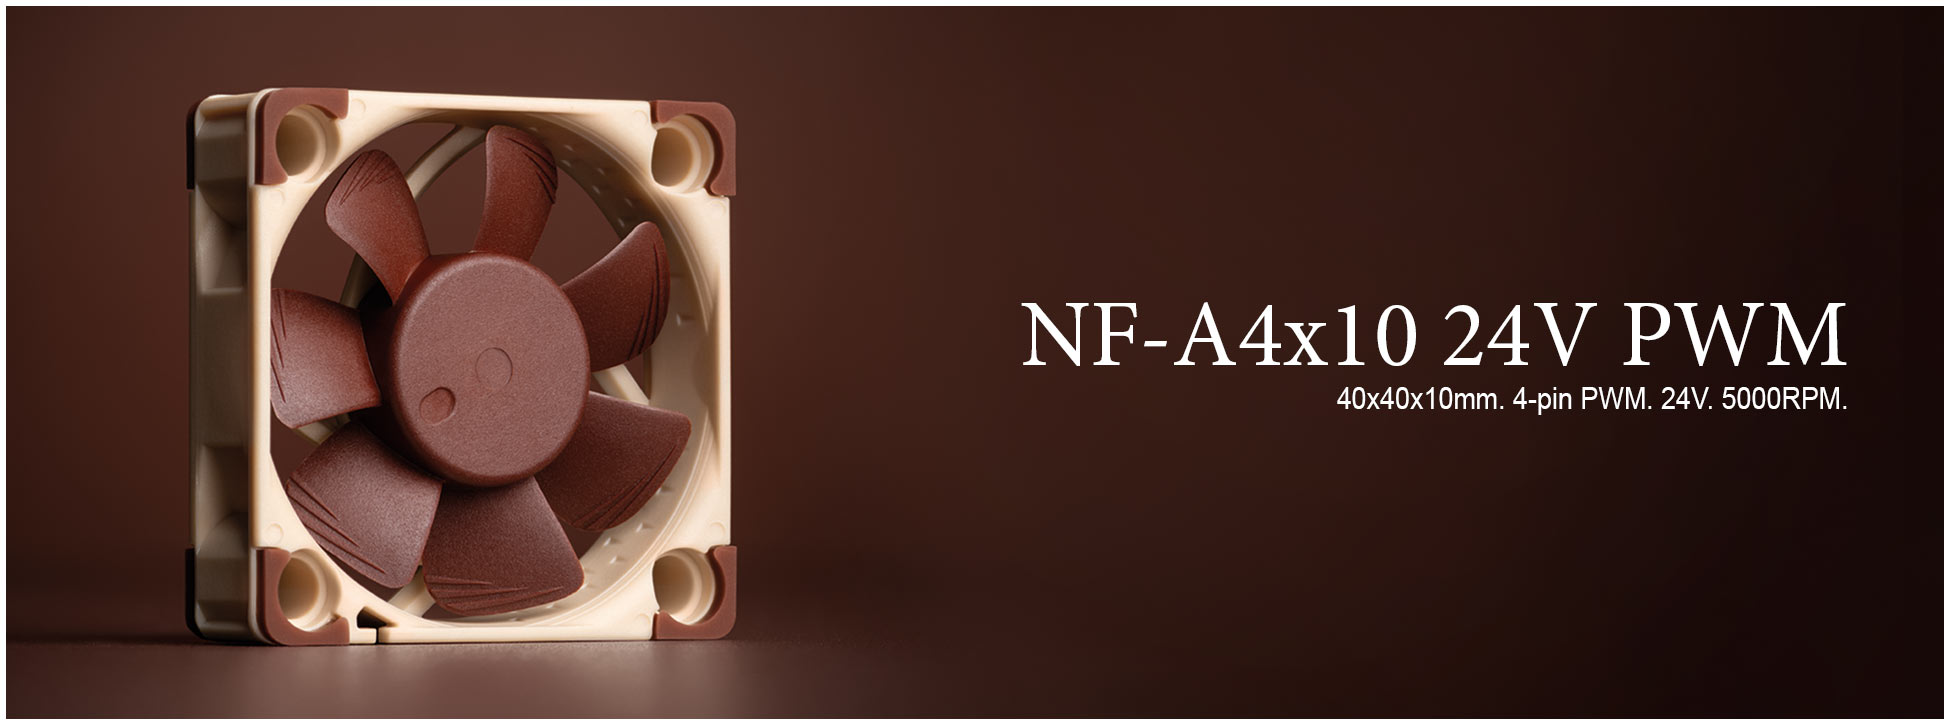 Noctua NF-A12x15 Pwm 120mm X 15mm 4-pin Slim Ventilateur